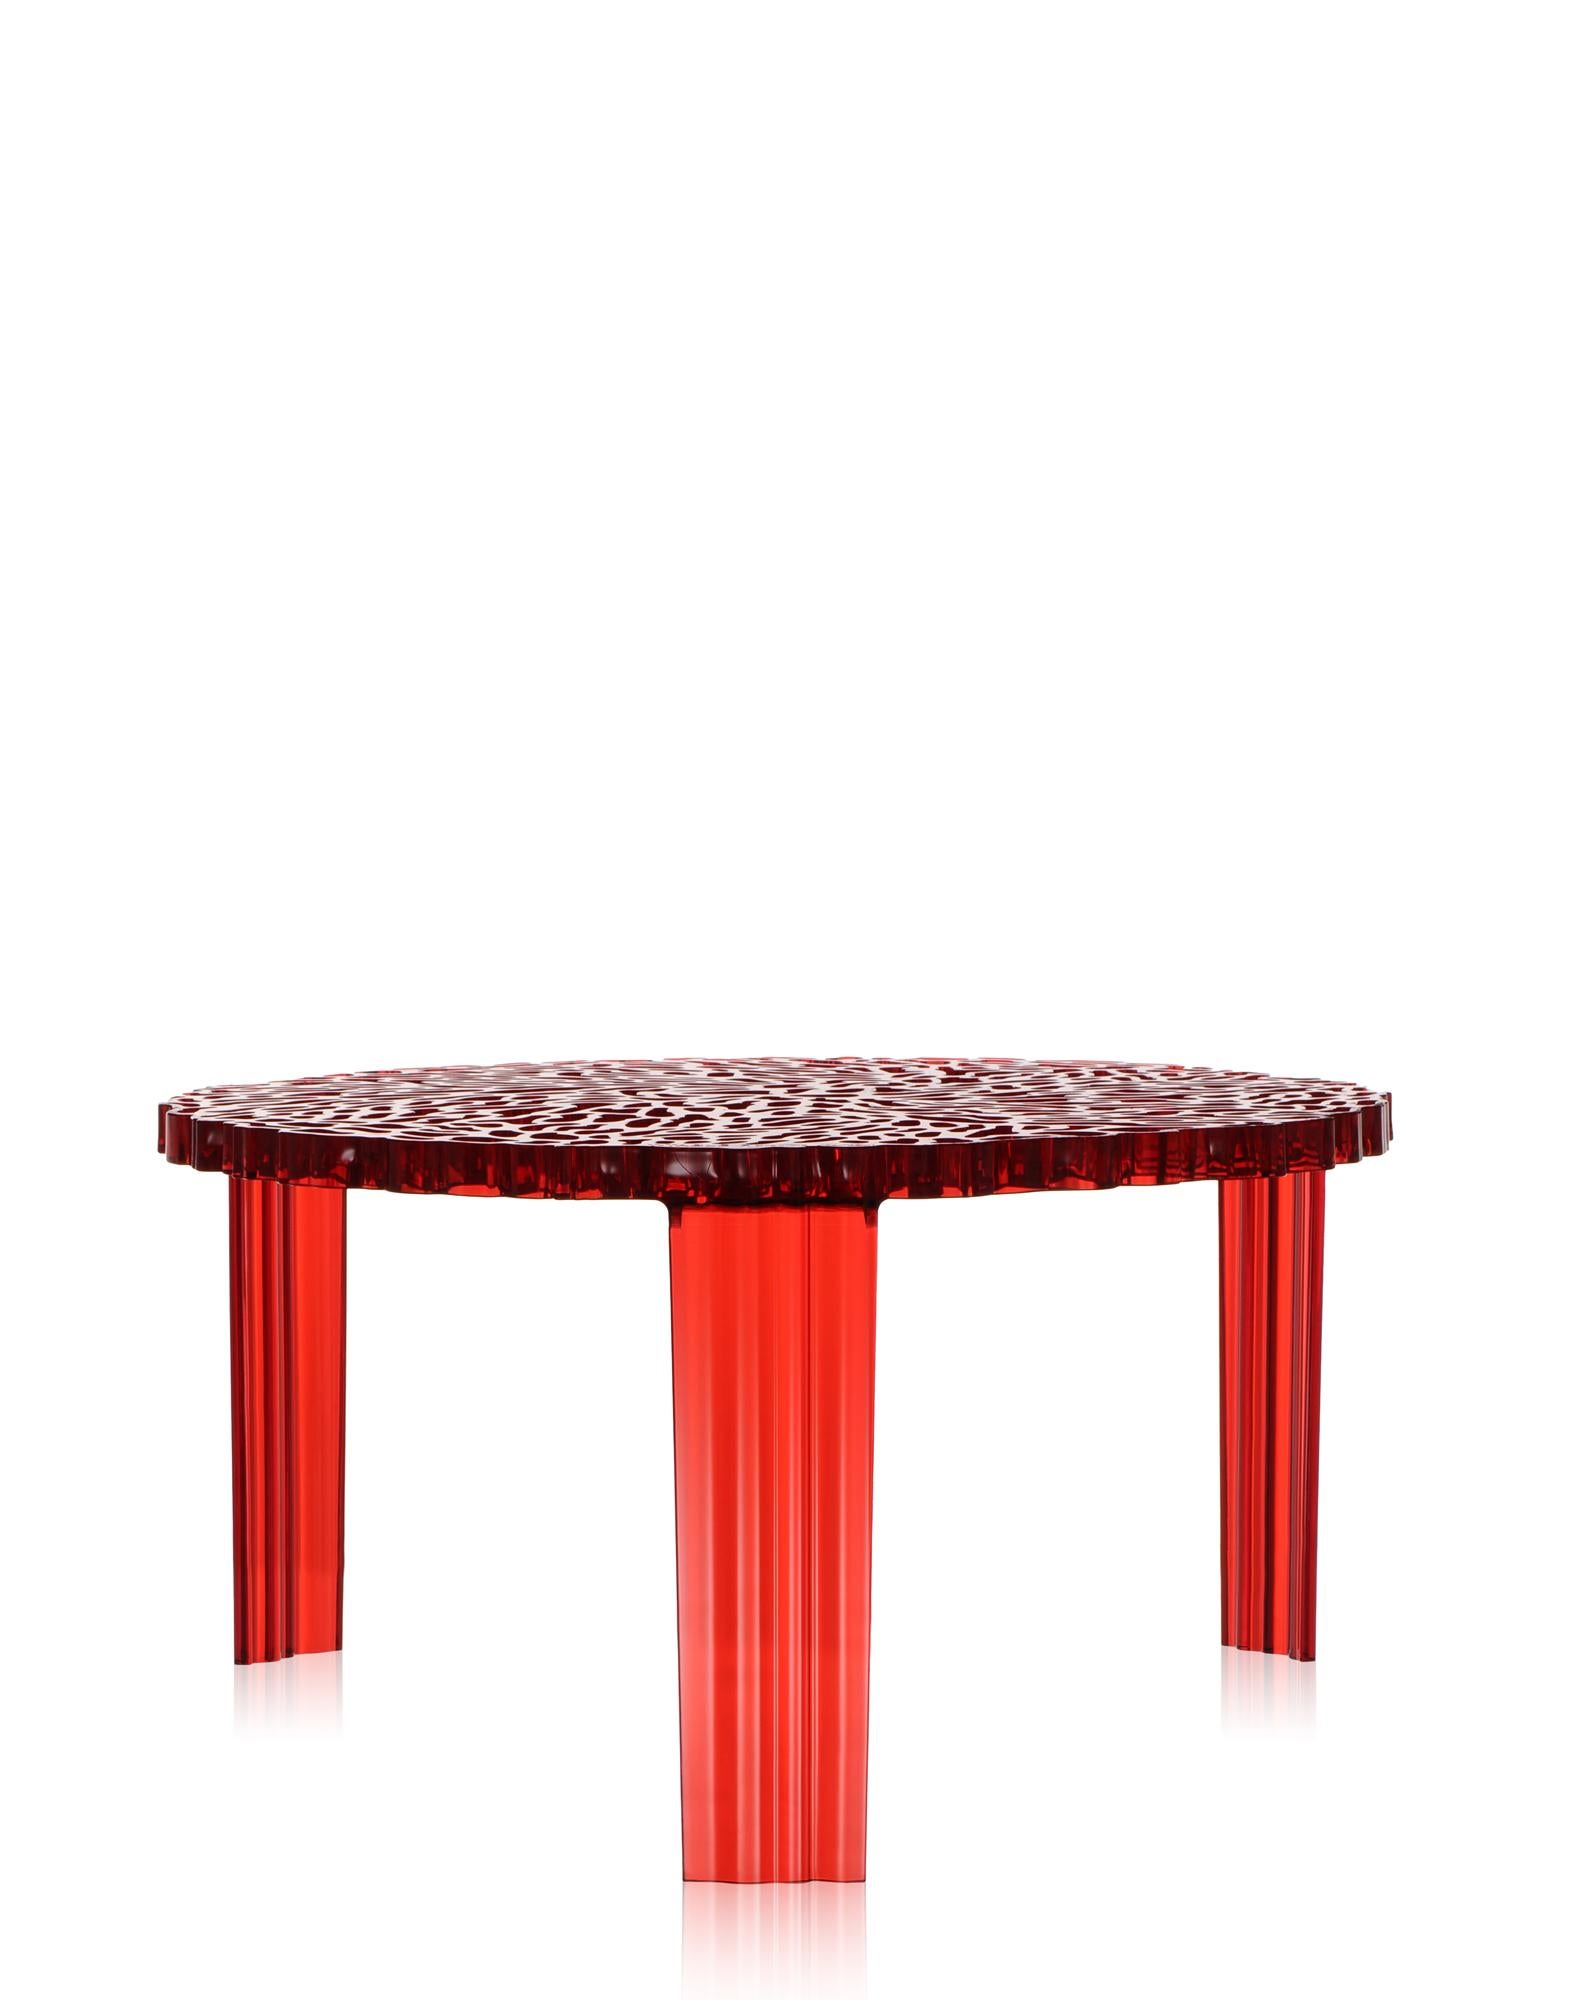 Eine Reihe von Tischen in drei Höhen. Auf der Oberfläche der T-Tischplatte wechseln sich Fülle und Weite ab, um einen eleganten und kostbaren Effekt zu erzielen, der an eine Stickerei erinnert.

Er ist in 3 verschiedenen Höhen erhältlich.